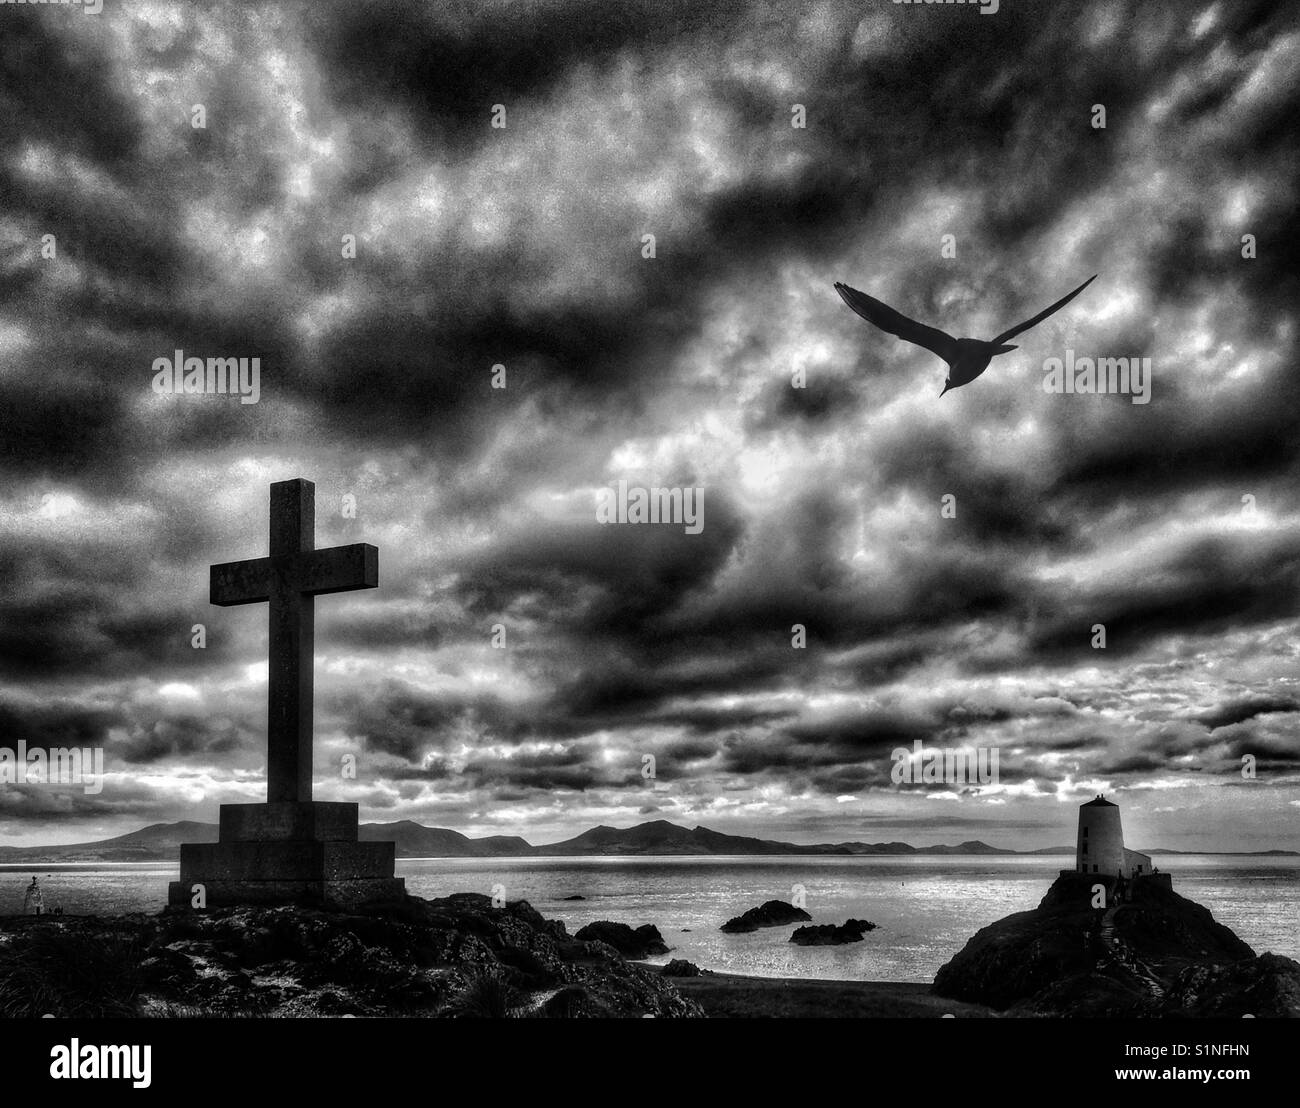 Kreuz Memorial und Leuchtturm auf llanddwyn Island aus Whitby Strand auf Anglesey, Nordwales. Stockfoto